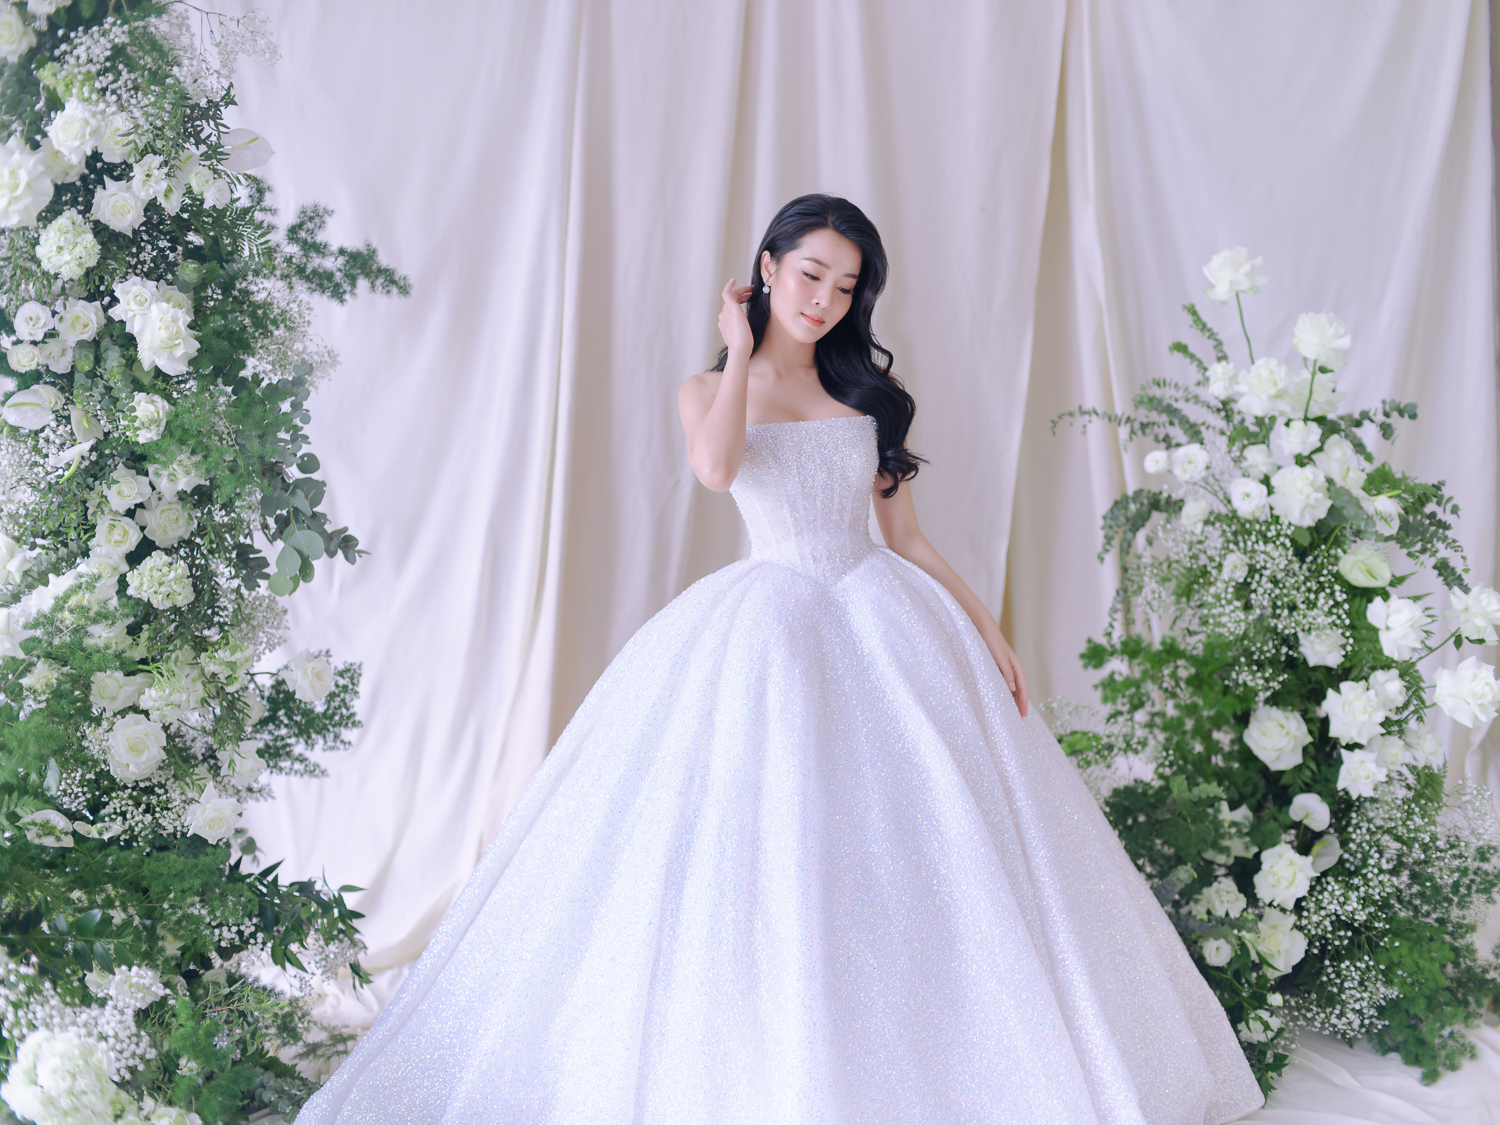 Hé lộ bộ ảnh cưới của Karen Nguyễn cùng ông xã: Áo cưới được đính kết hơn 1000 viên pha lê - ảnh 4